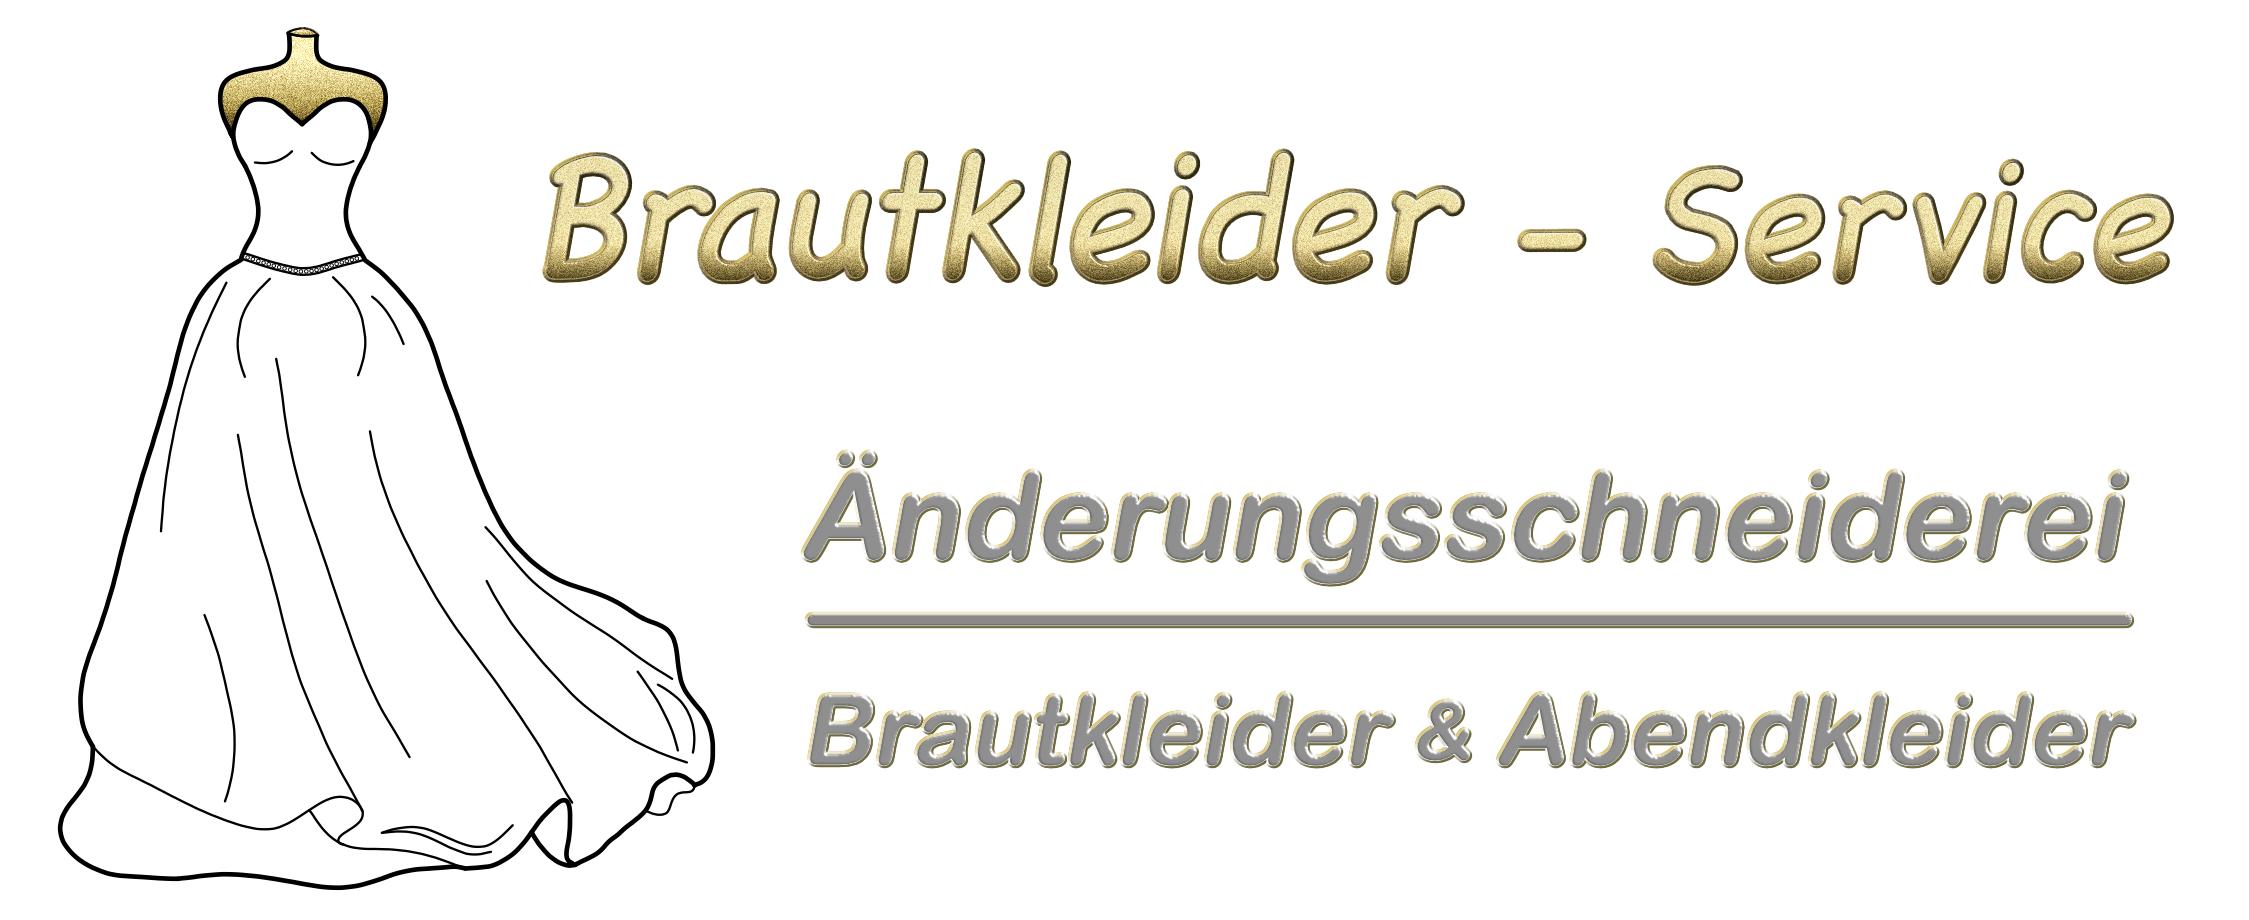 Brautkleider-Service